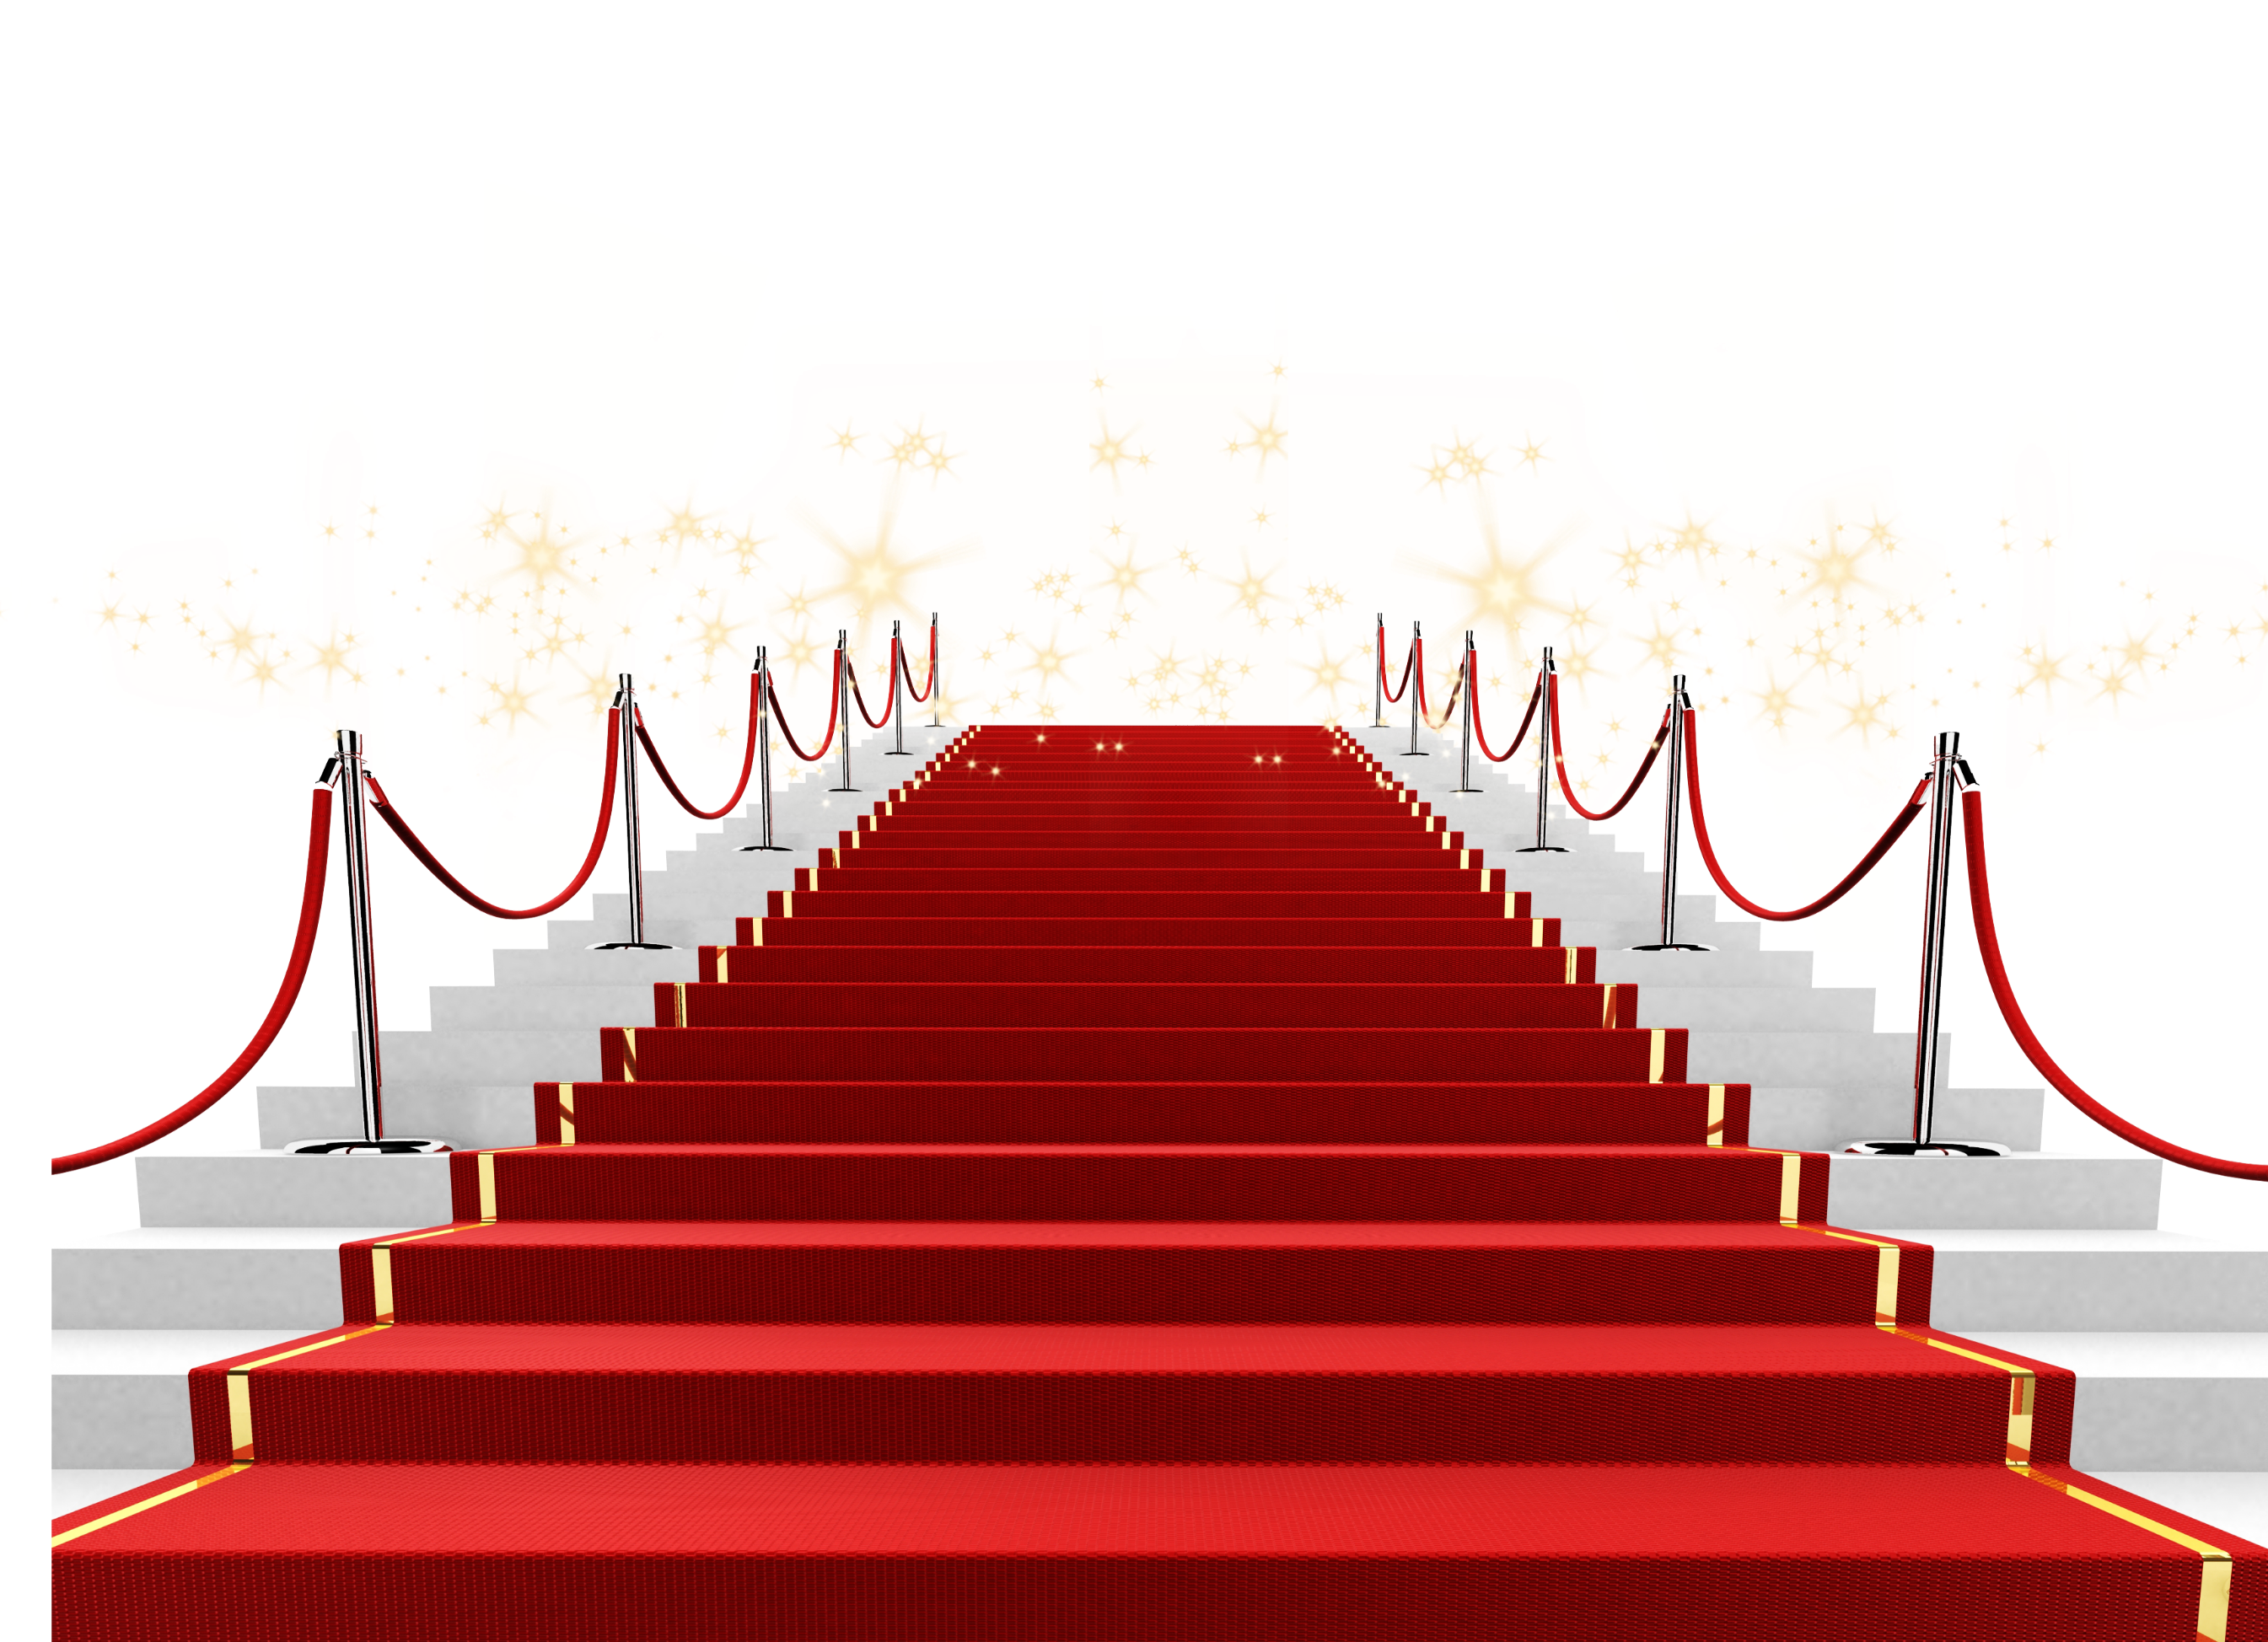 Звук лестницы. Красная ковровая дорожка. Лестница с красной дорожкой. Krasanaya darojka. Лестница на прозрачном фоне.